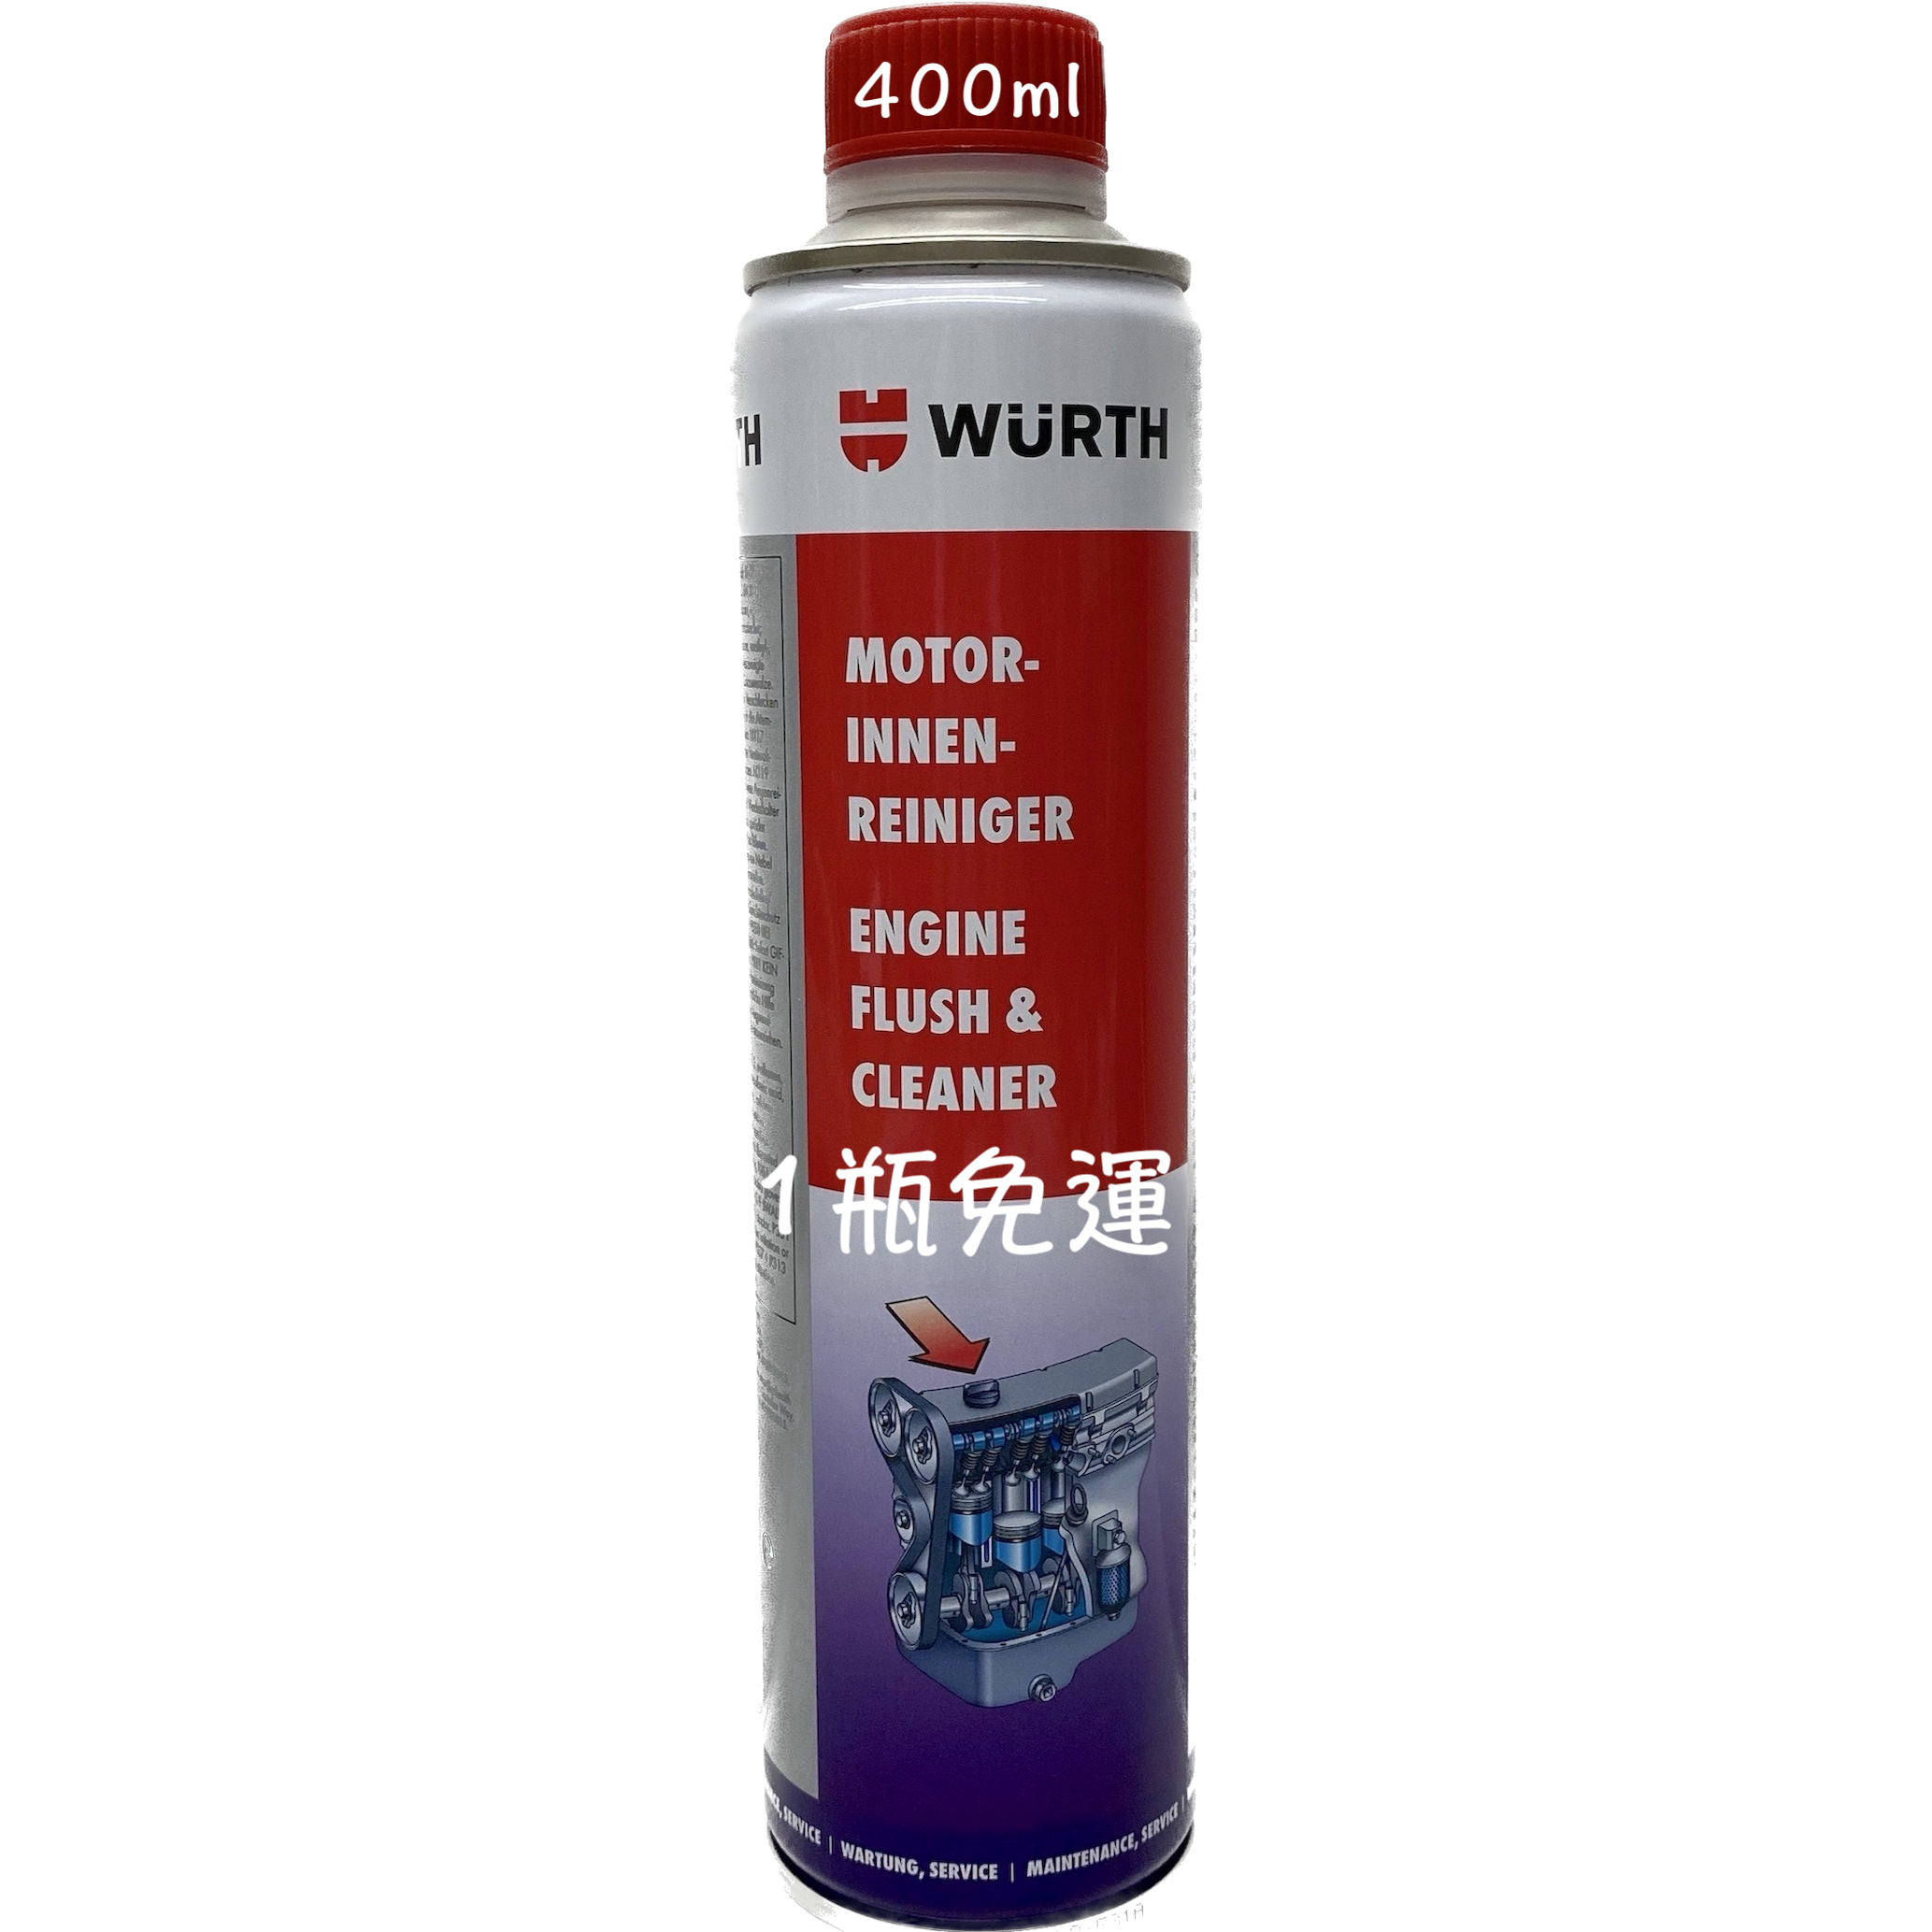 WURTH 5861 310 400 高效能引擎清潔調理劑 引擎通樂 引擎油泥清洗劑 機油油泥清洗劑 引擎內部【油麻地】